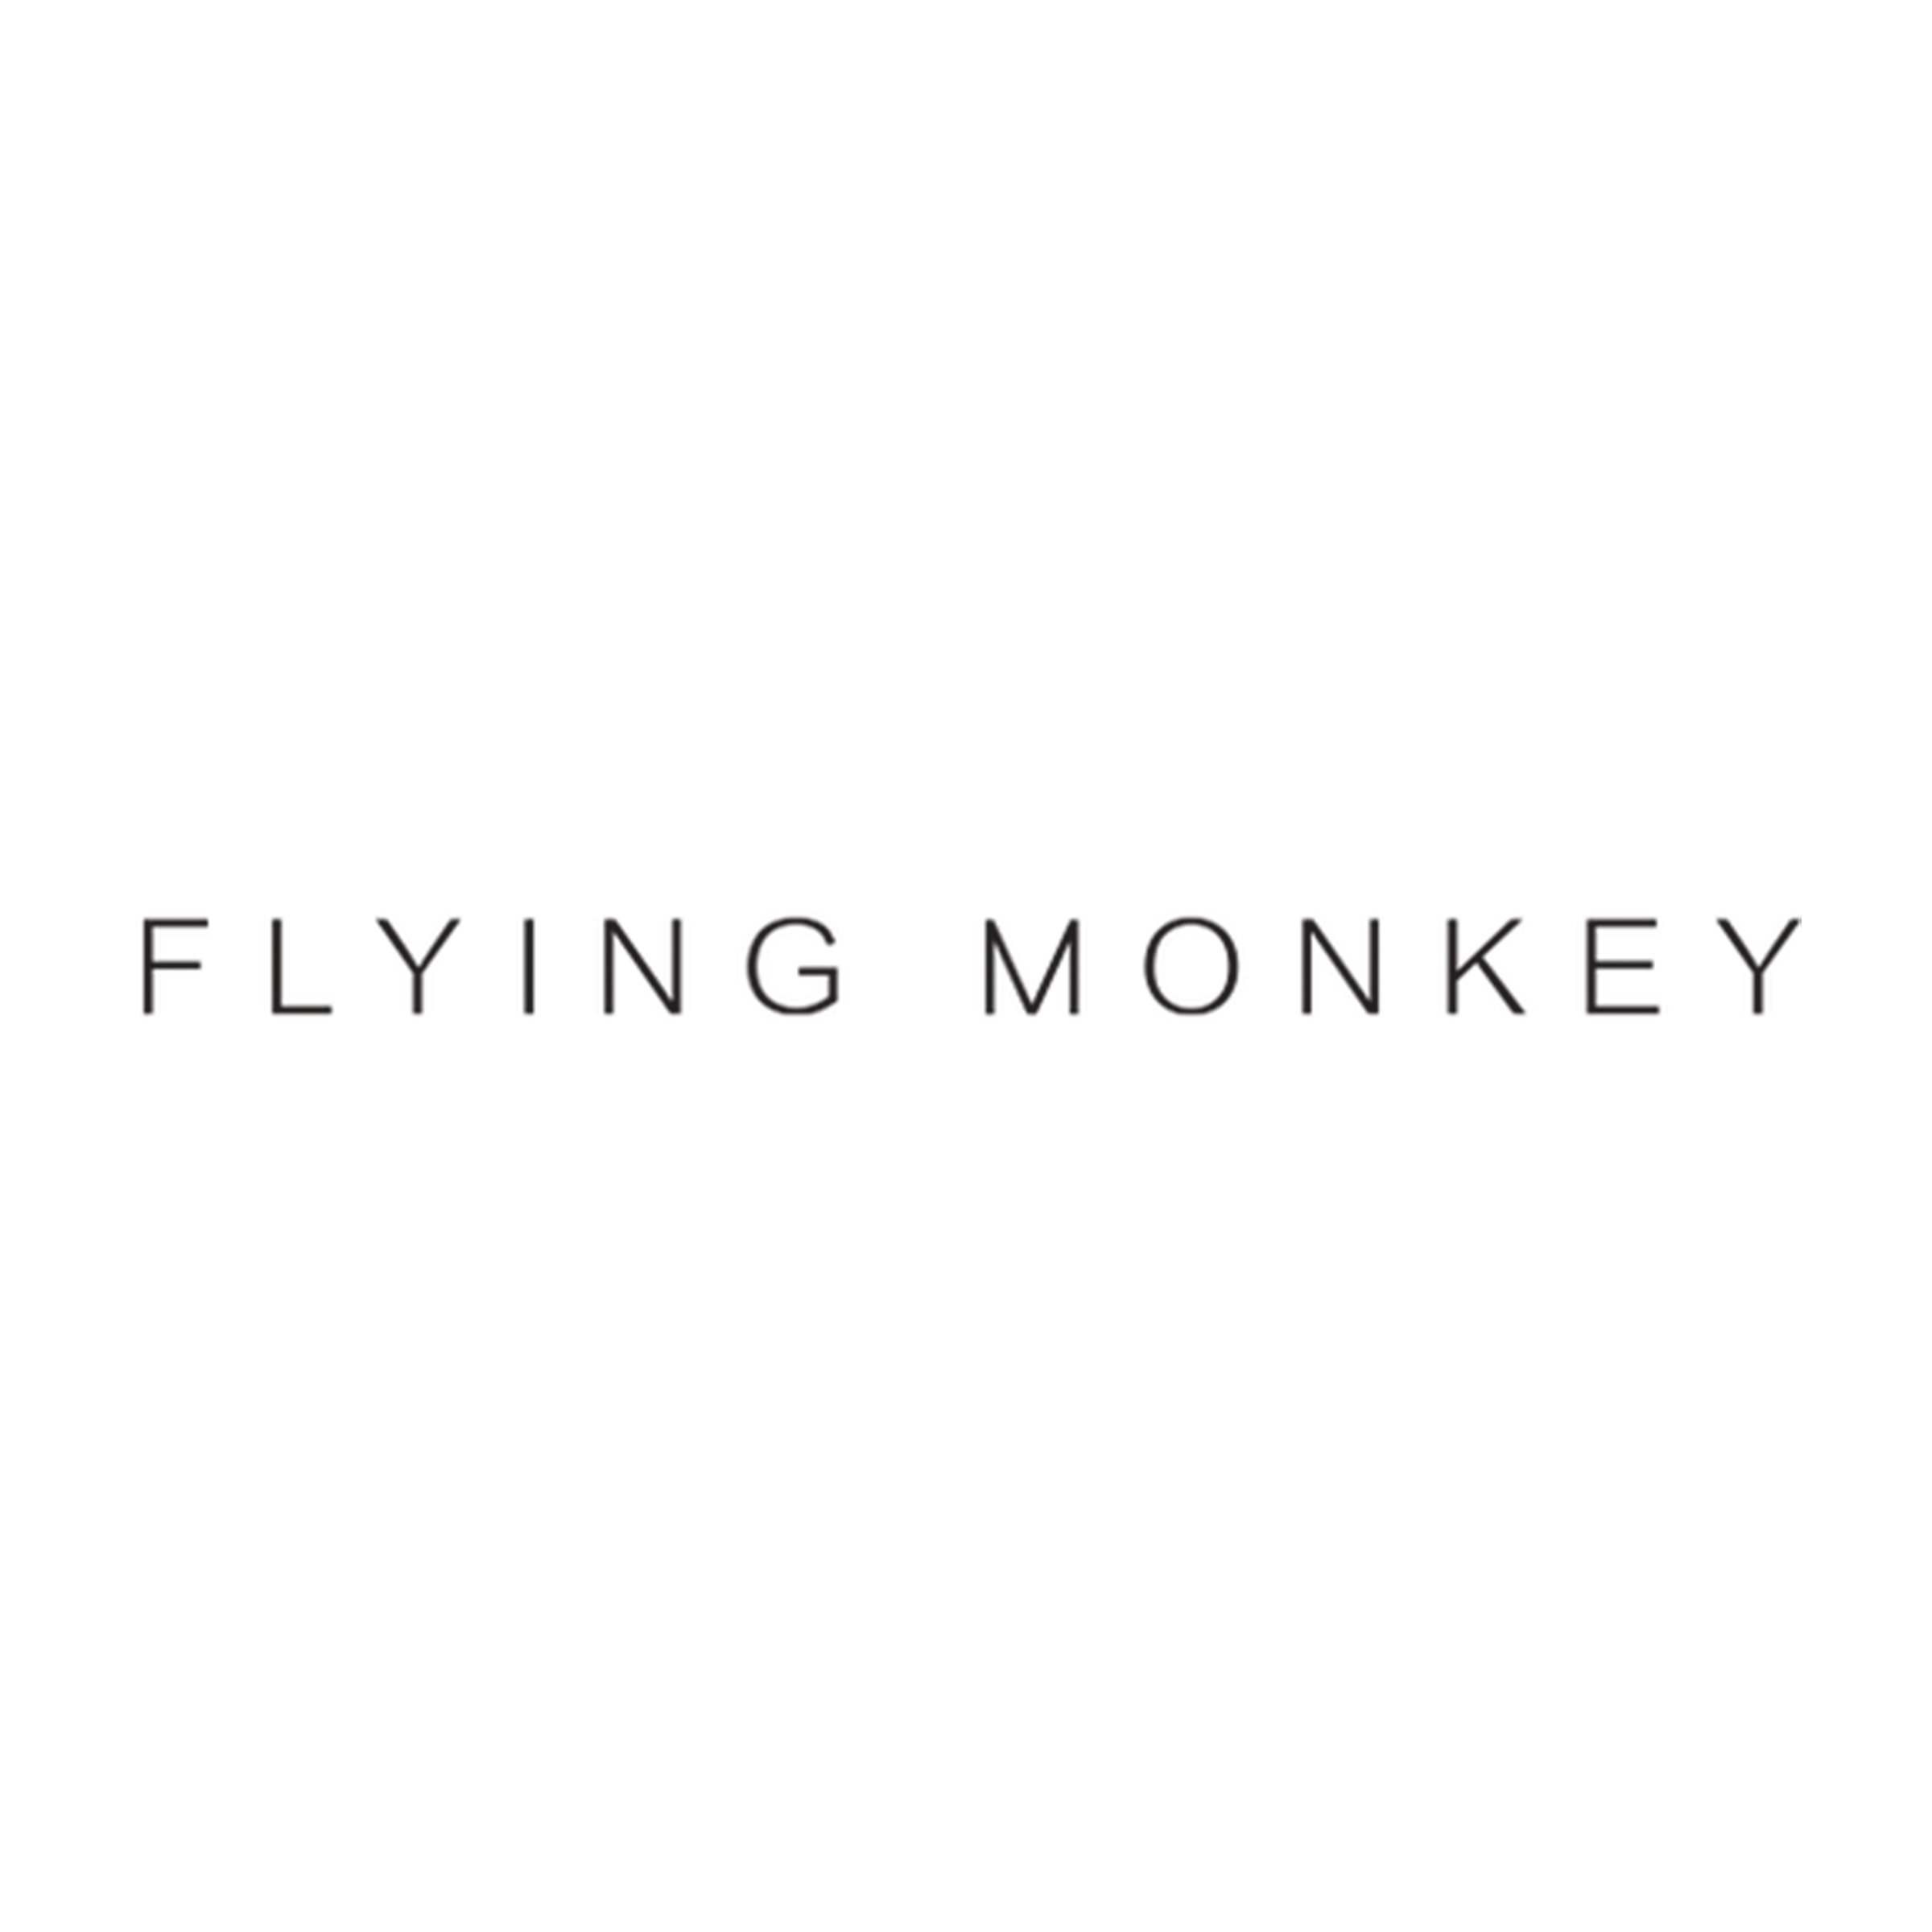 flying-monkey-logo.jpg